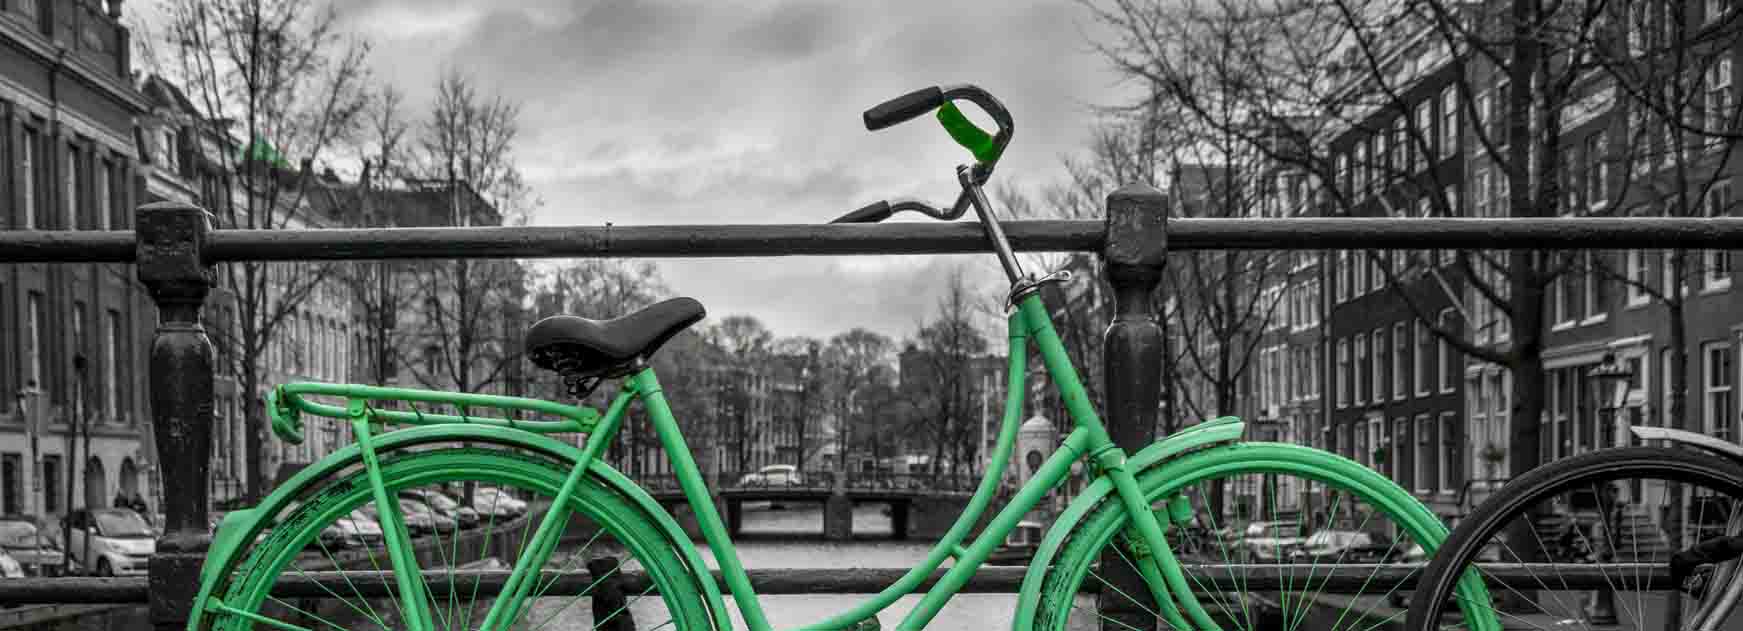 fototapeta z miastem i zielonym rowerem